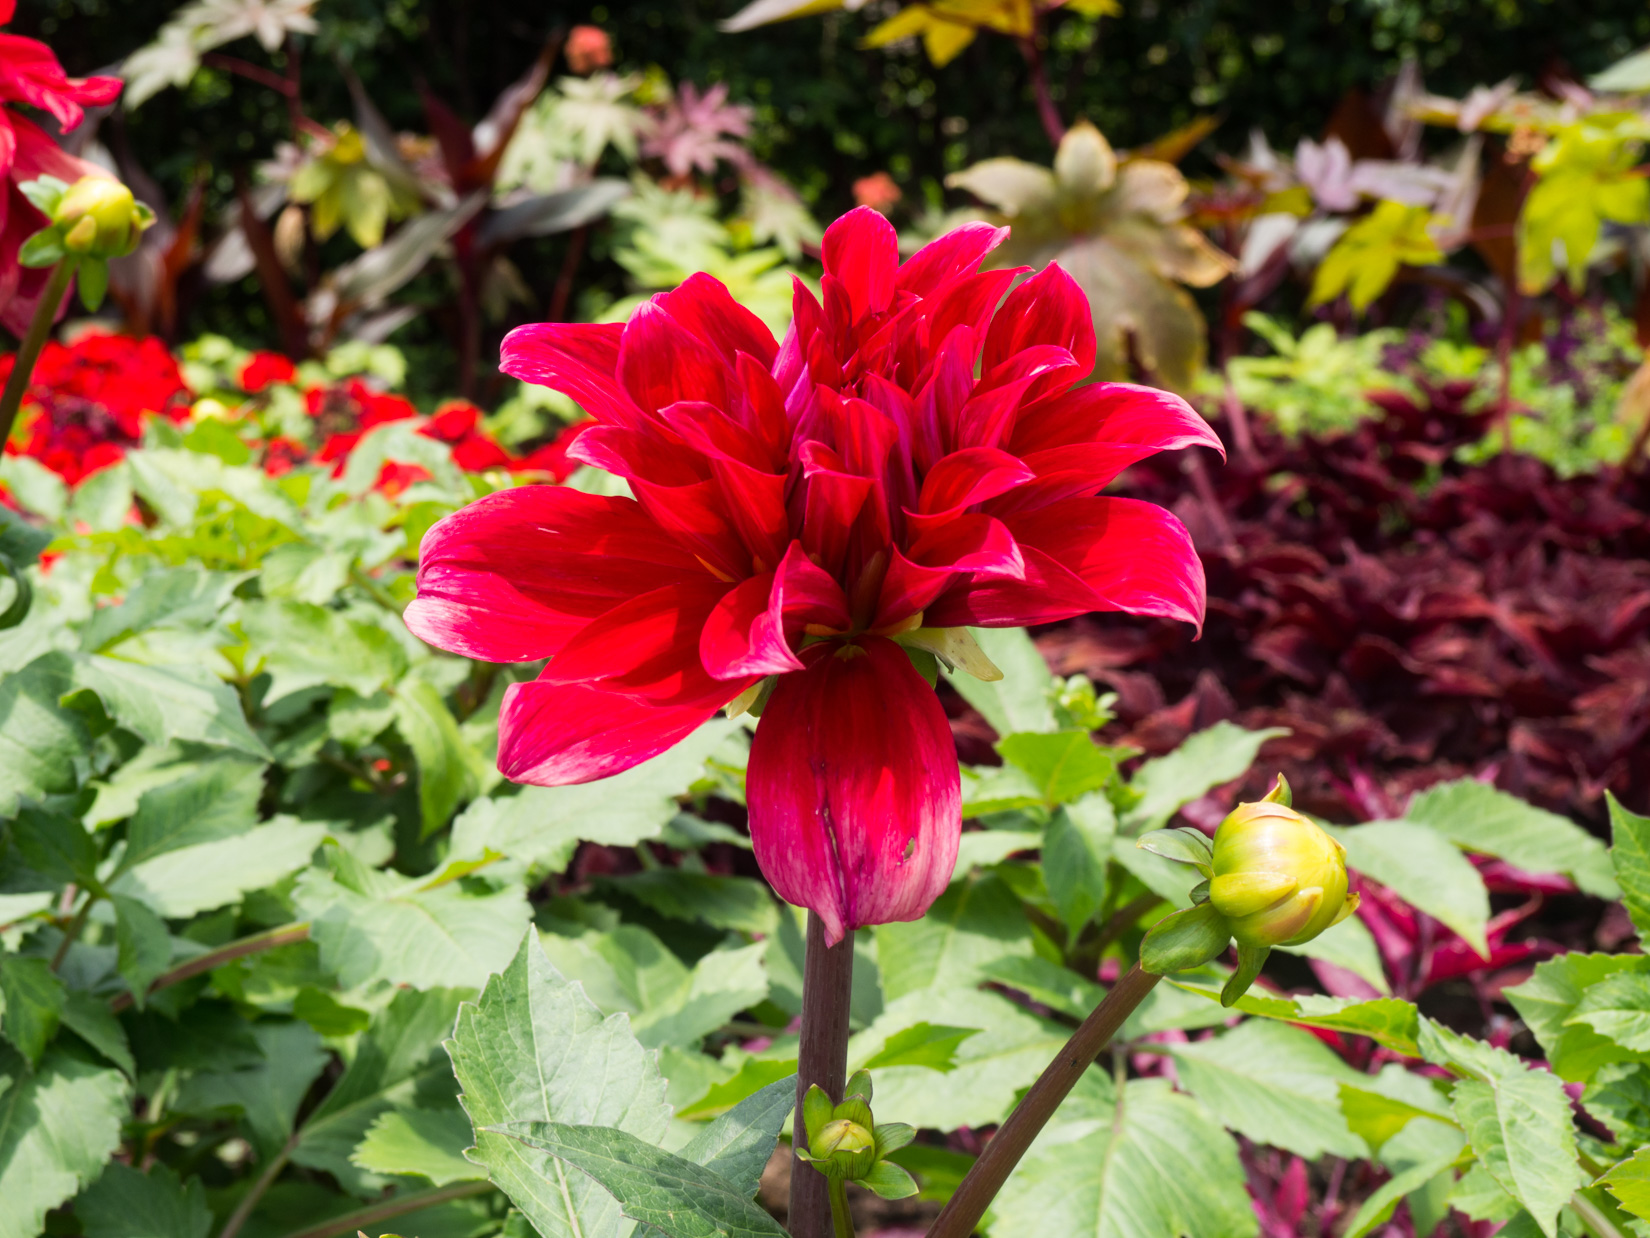 Red Flower in Garden